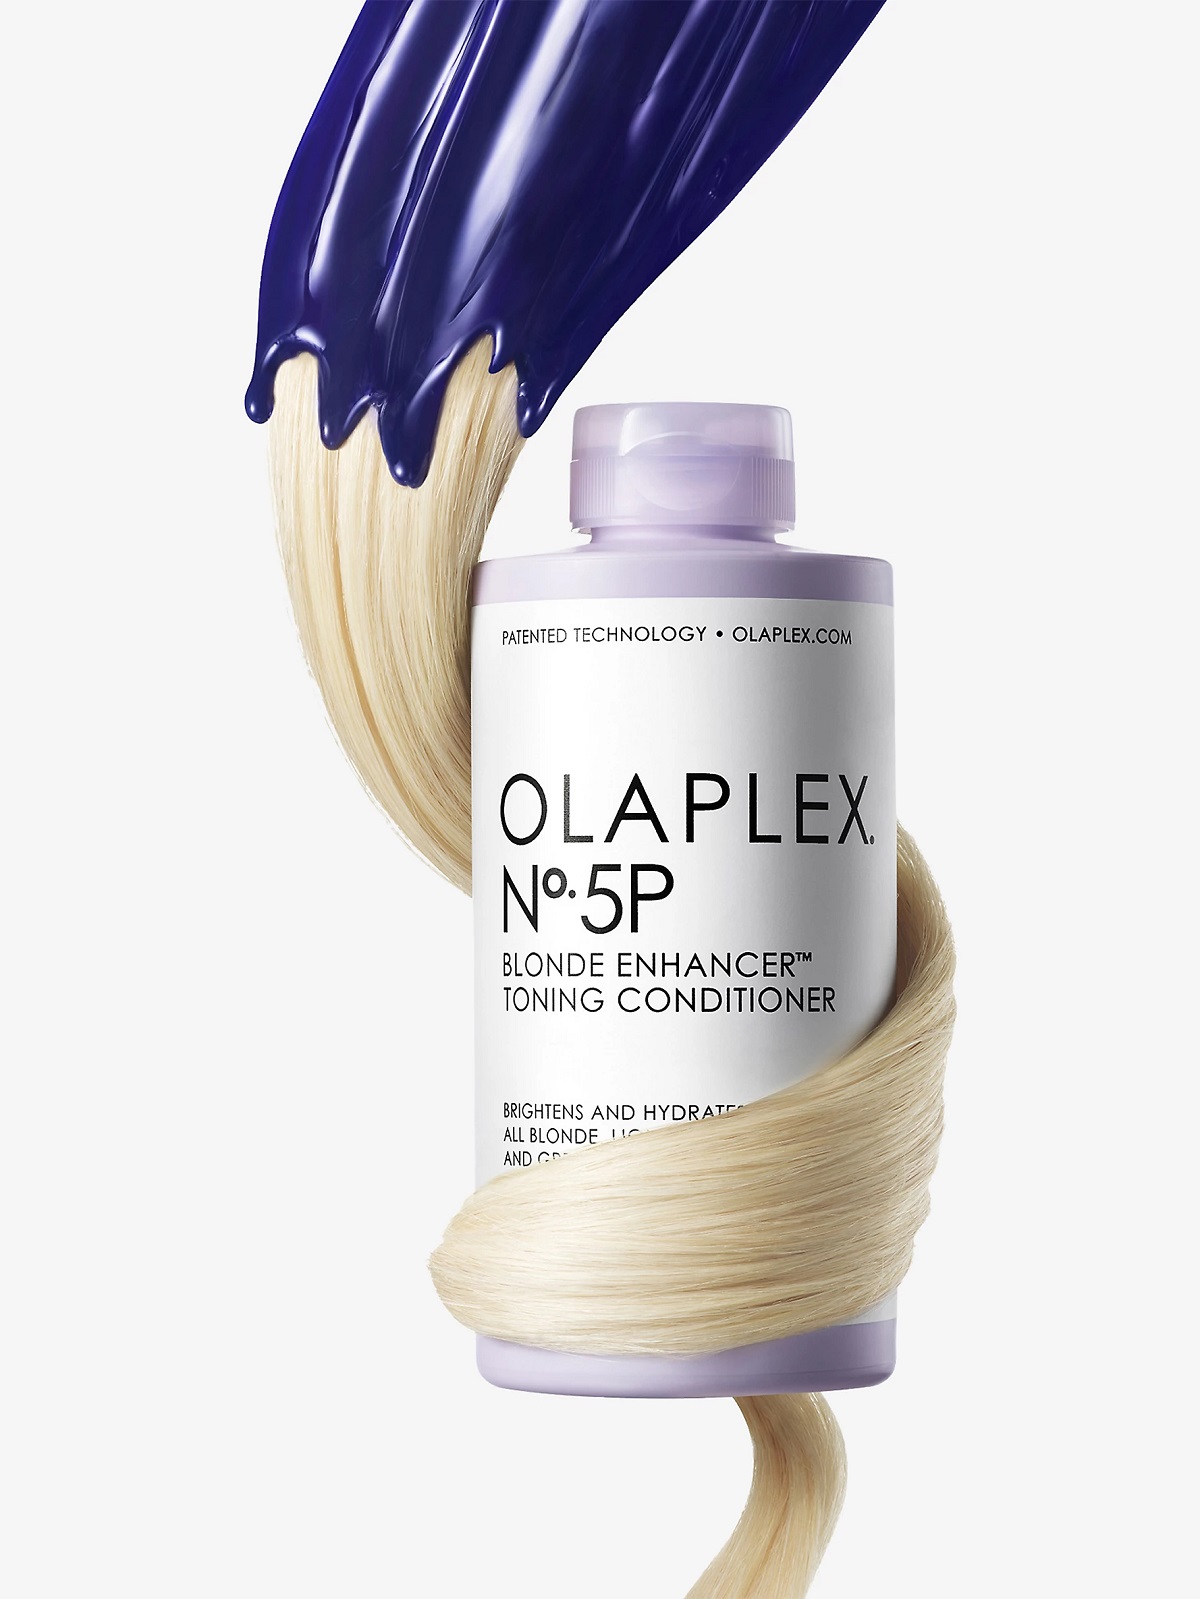 Olaplex No. 5P Blonde Enhancing Toning Conditioner